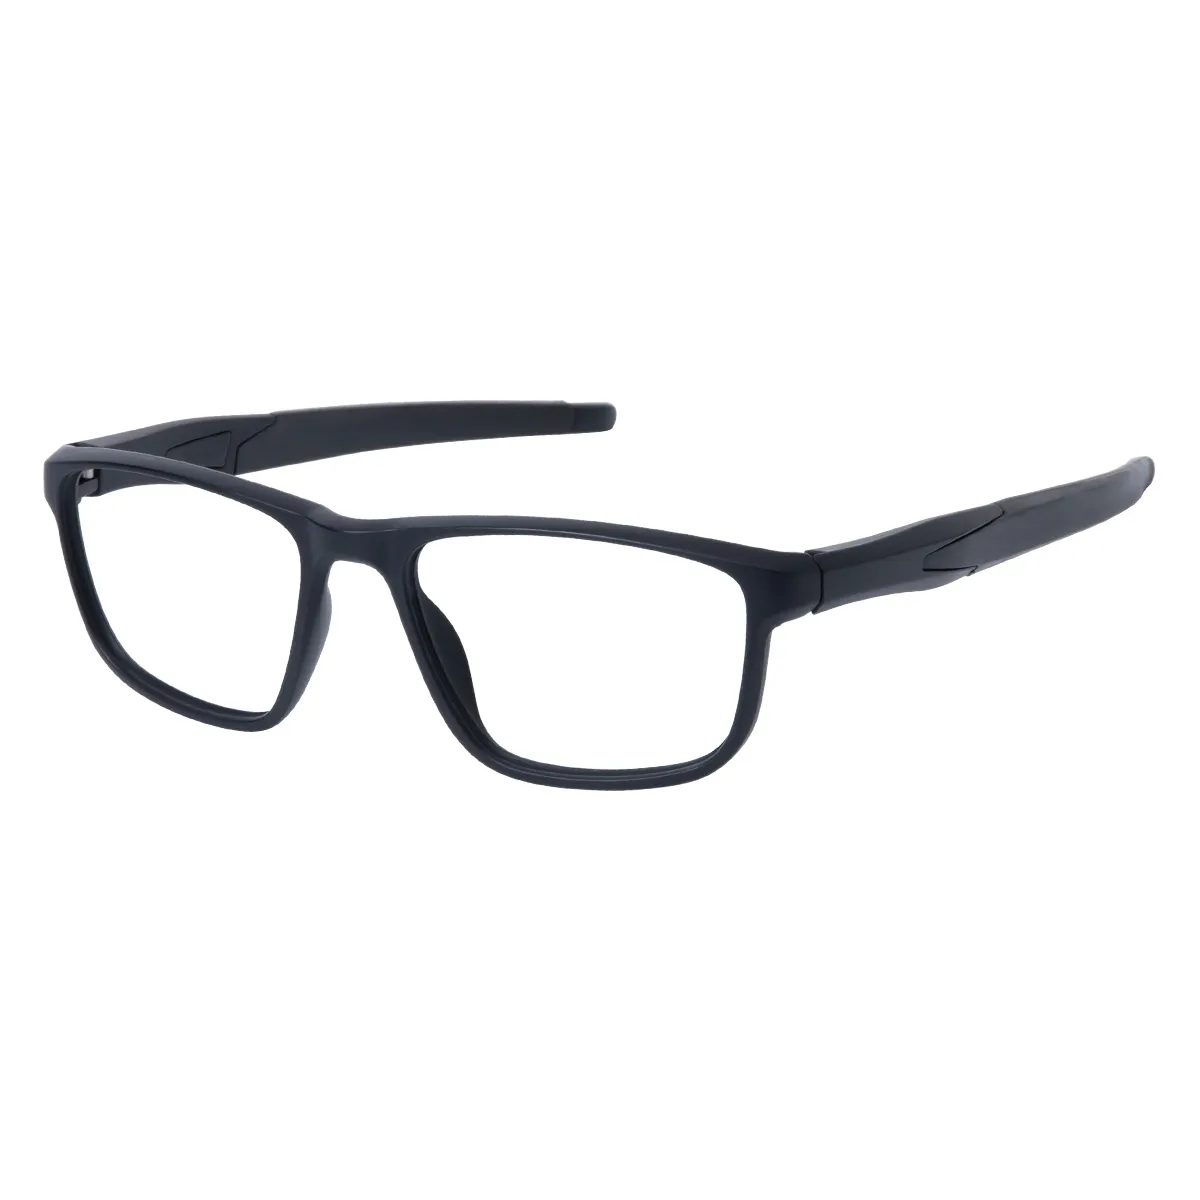 Finley - Rectangle Black Glasses for Men & Women